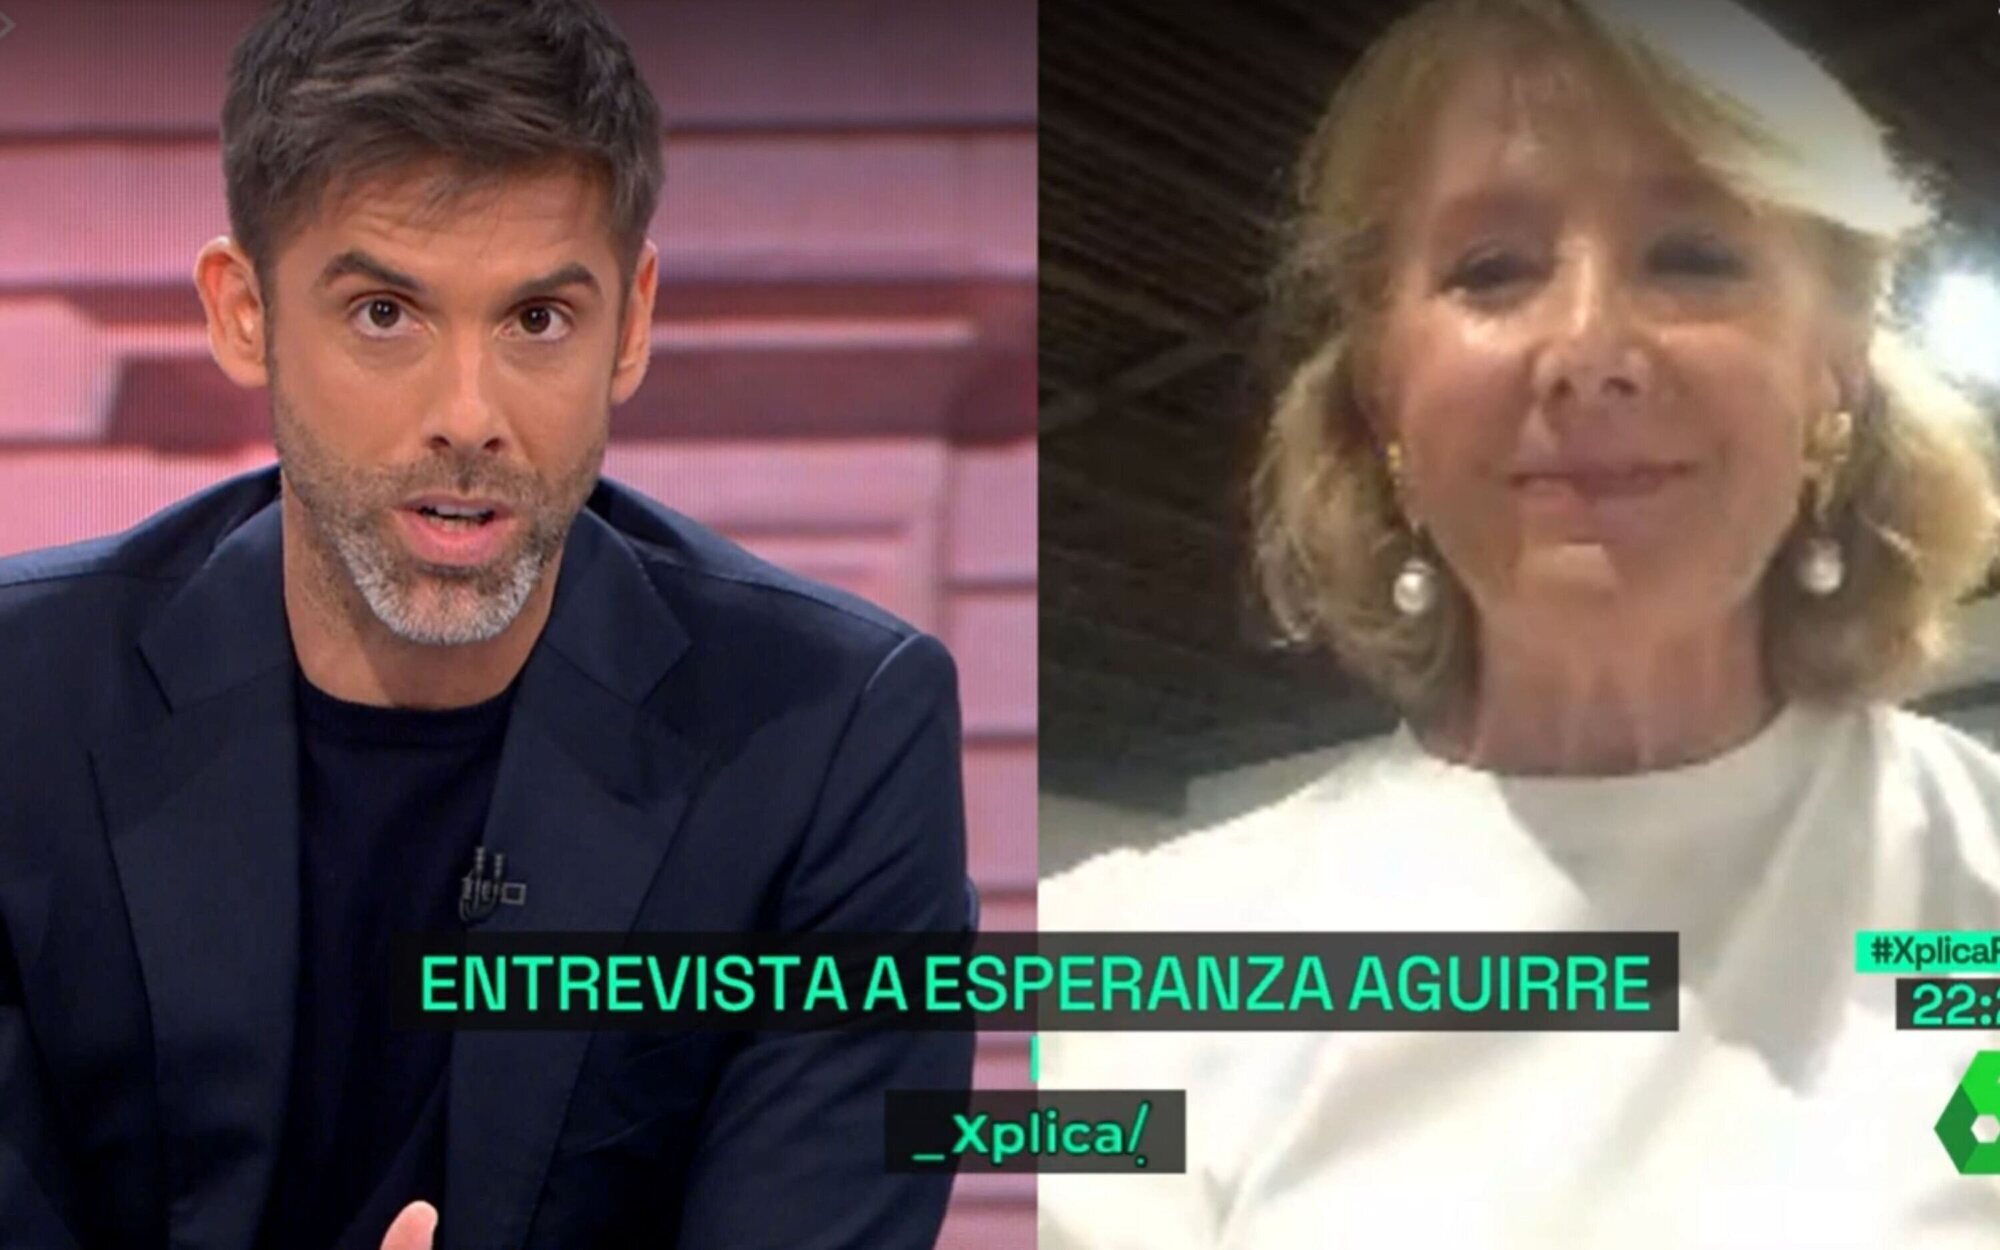 La surrealista afirmación de Esperanza Aguirre: "Vox está lleno de gays, no los he oído meterse con ellos"